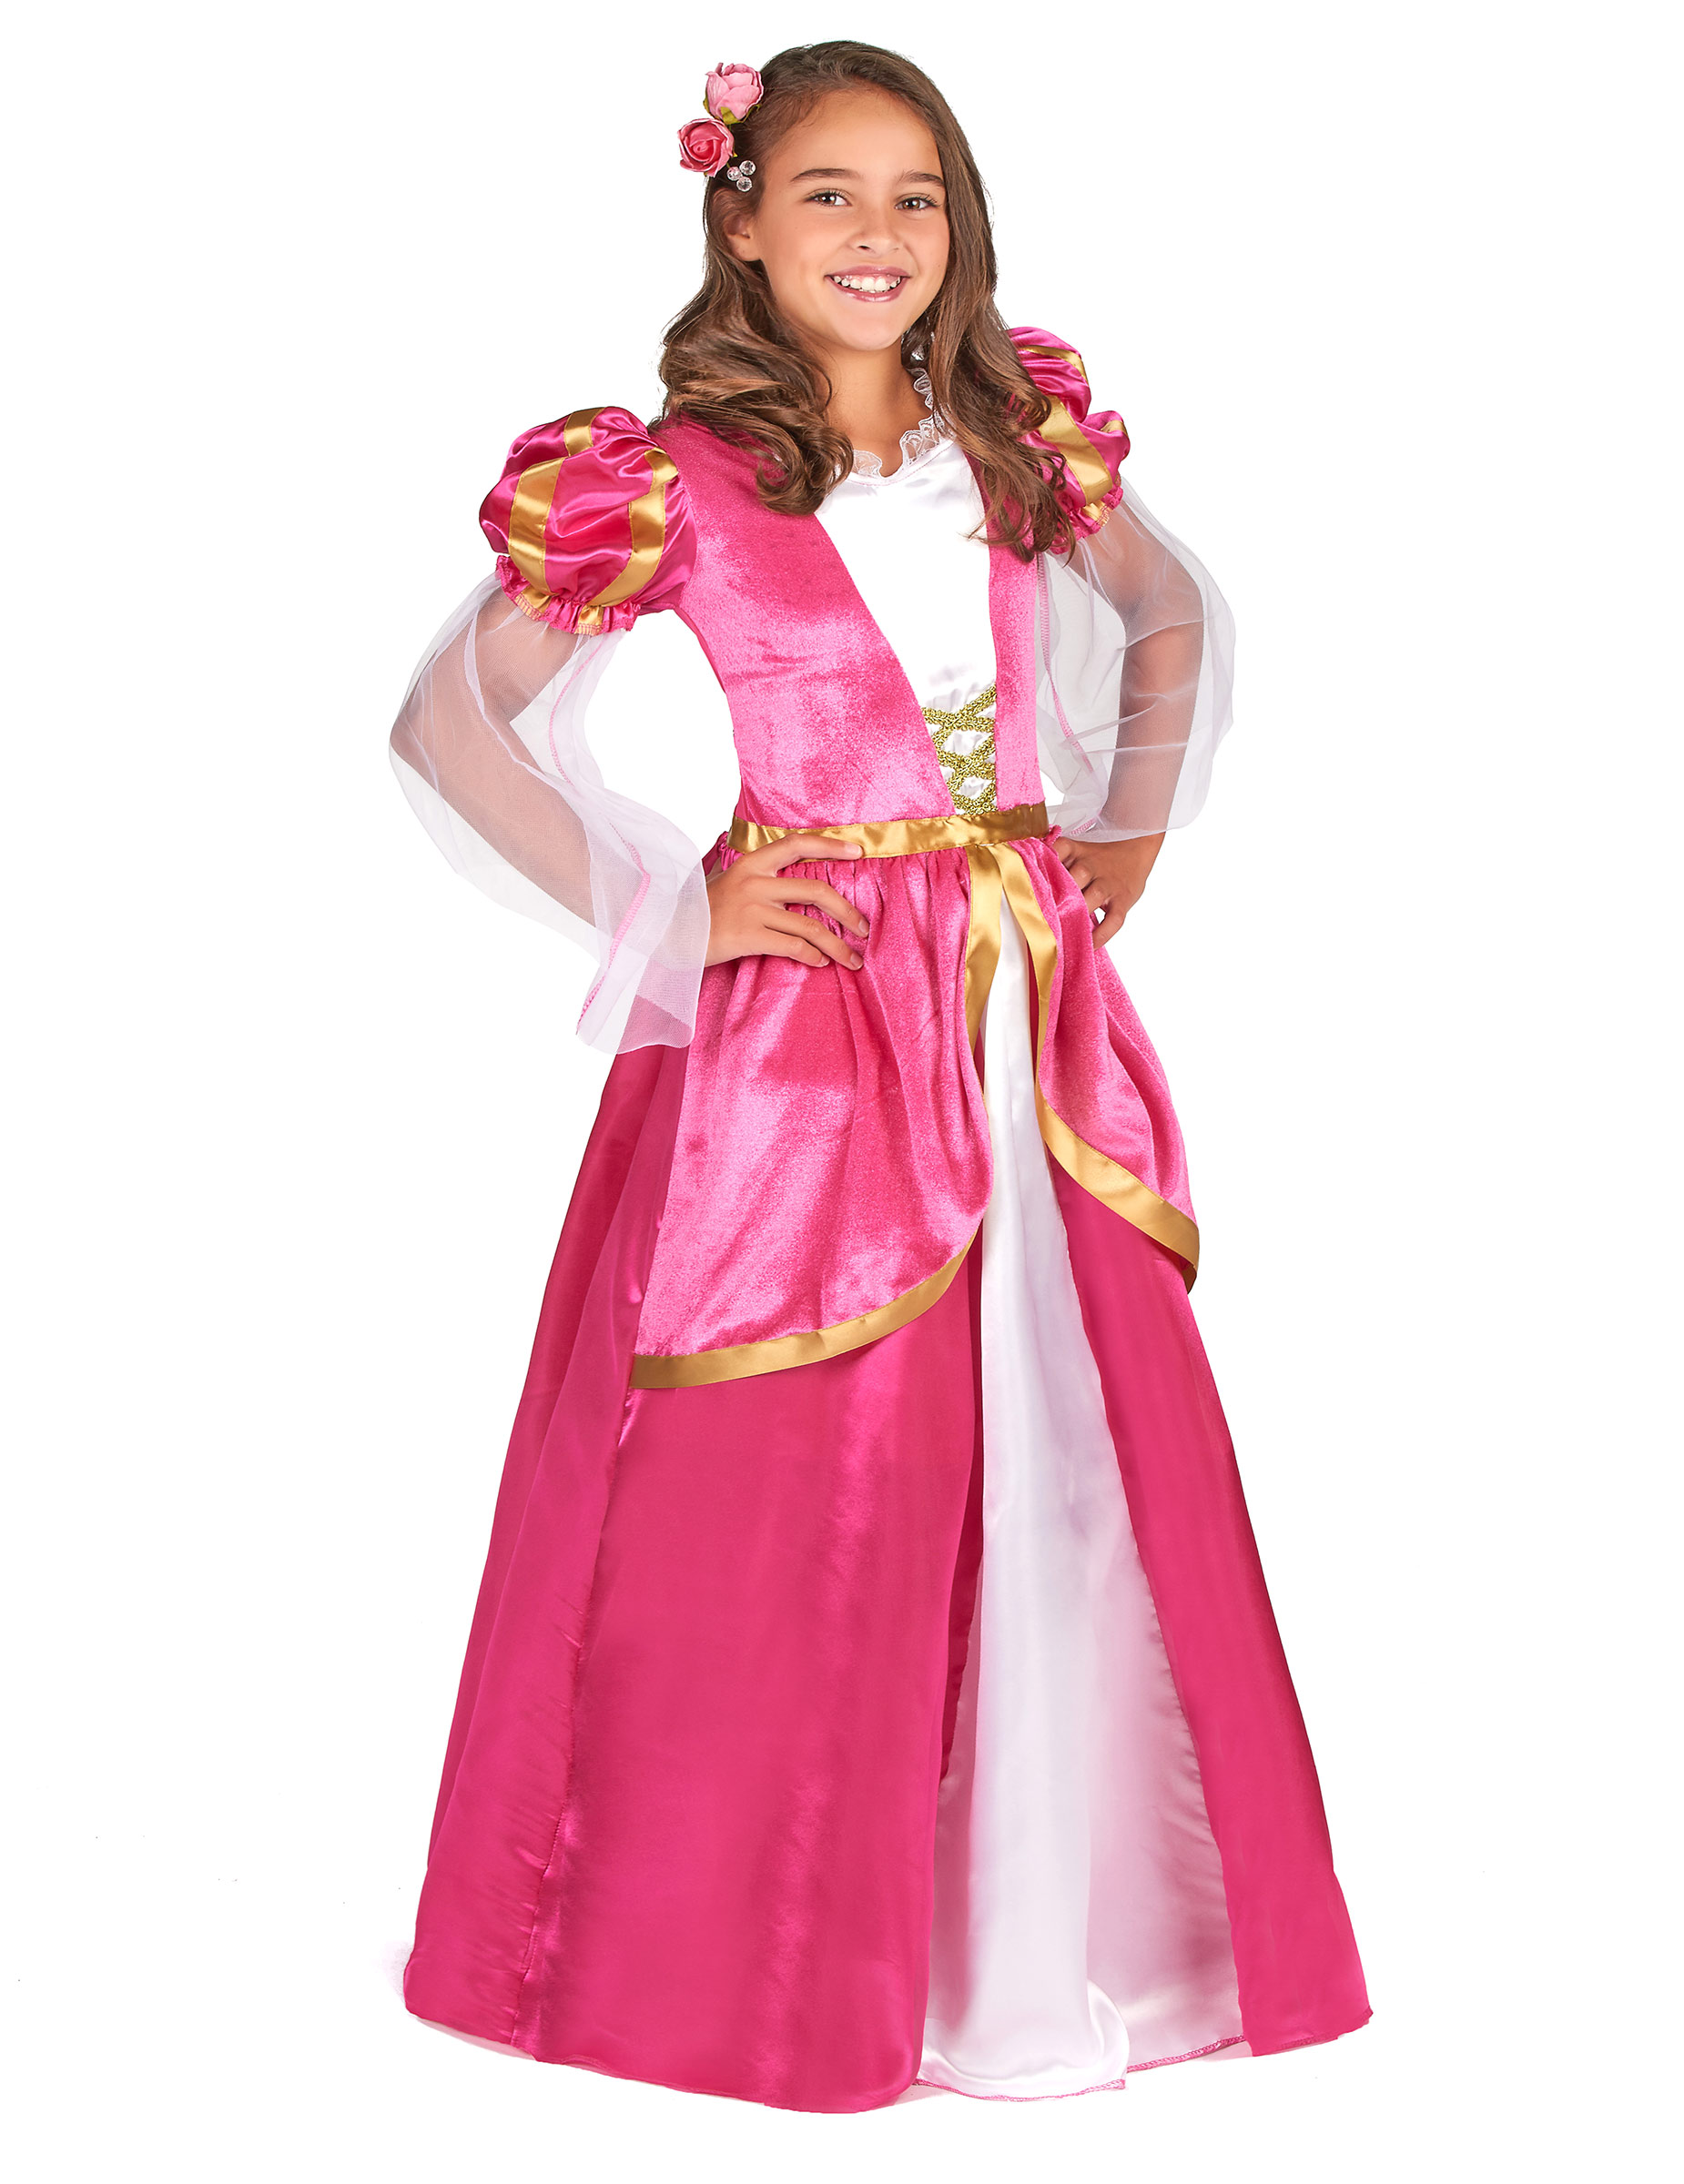 Déguisement princesse médiévale rose fille – Déguisements cadeaux pas chers, Boutique Arlequin